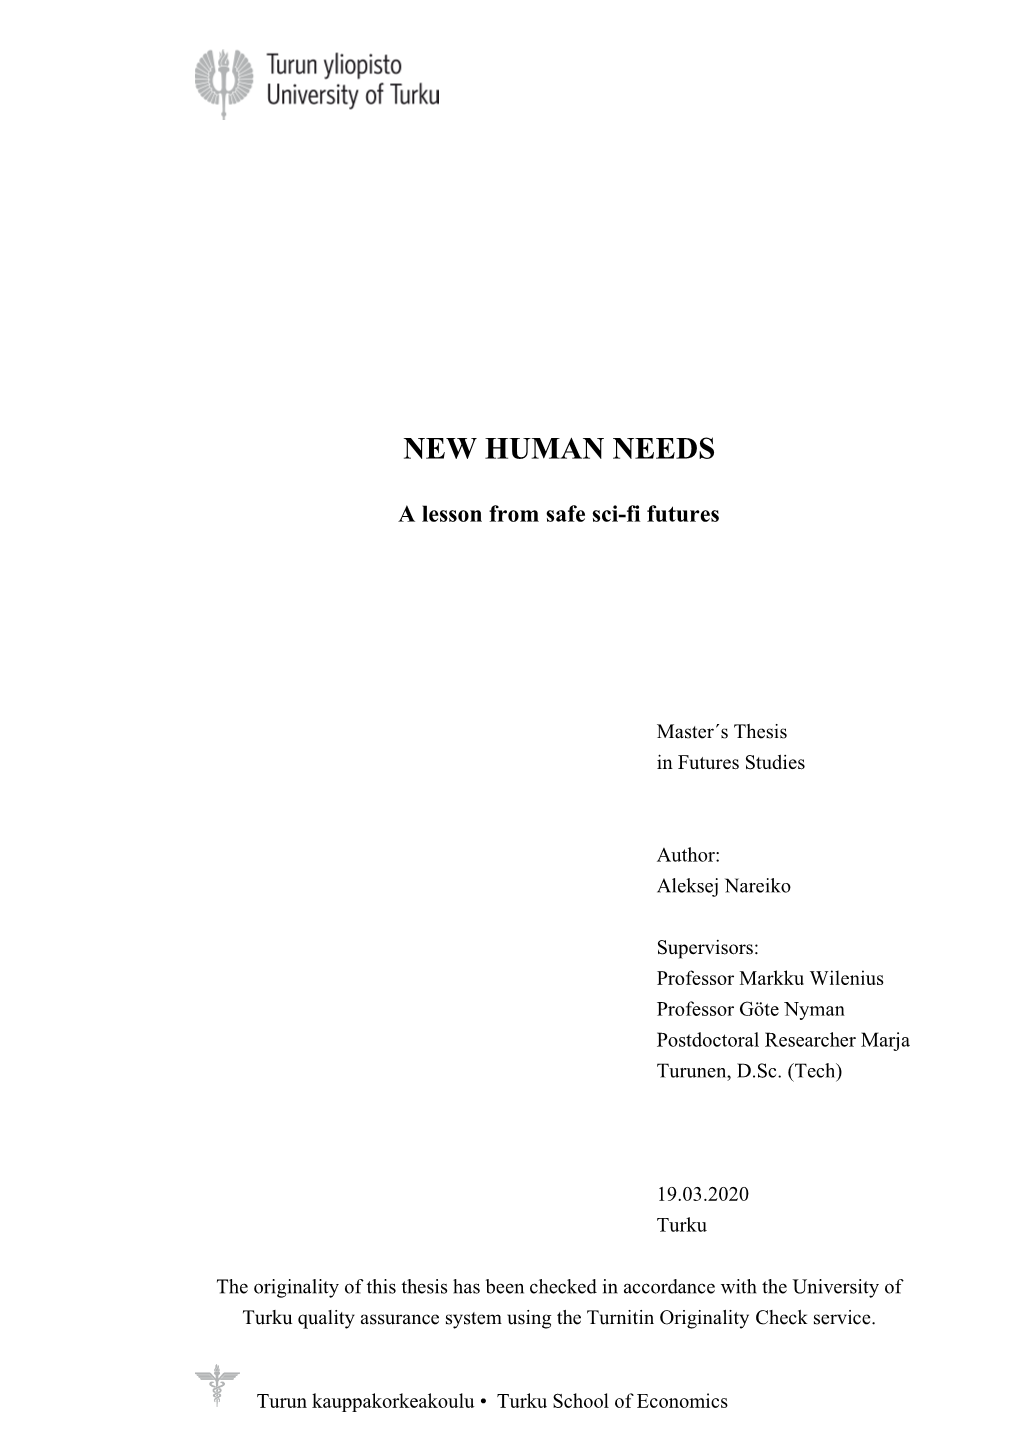 New Human Needs